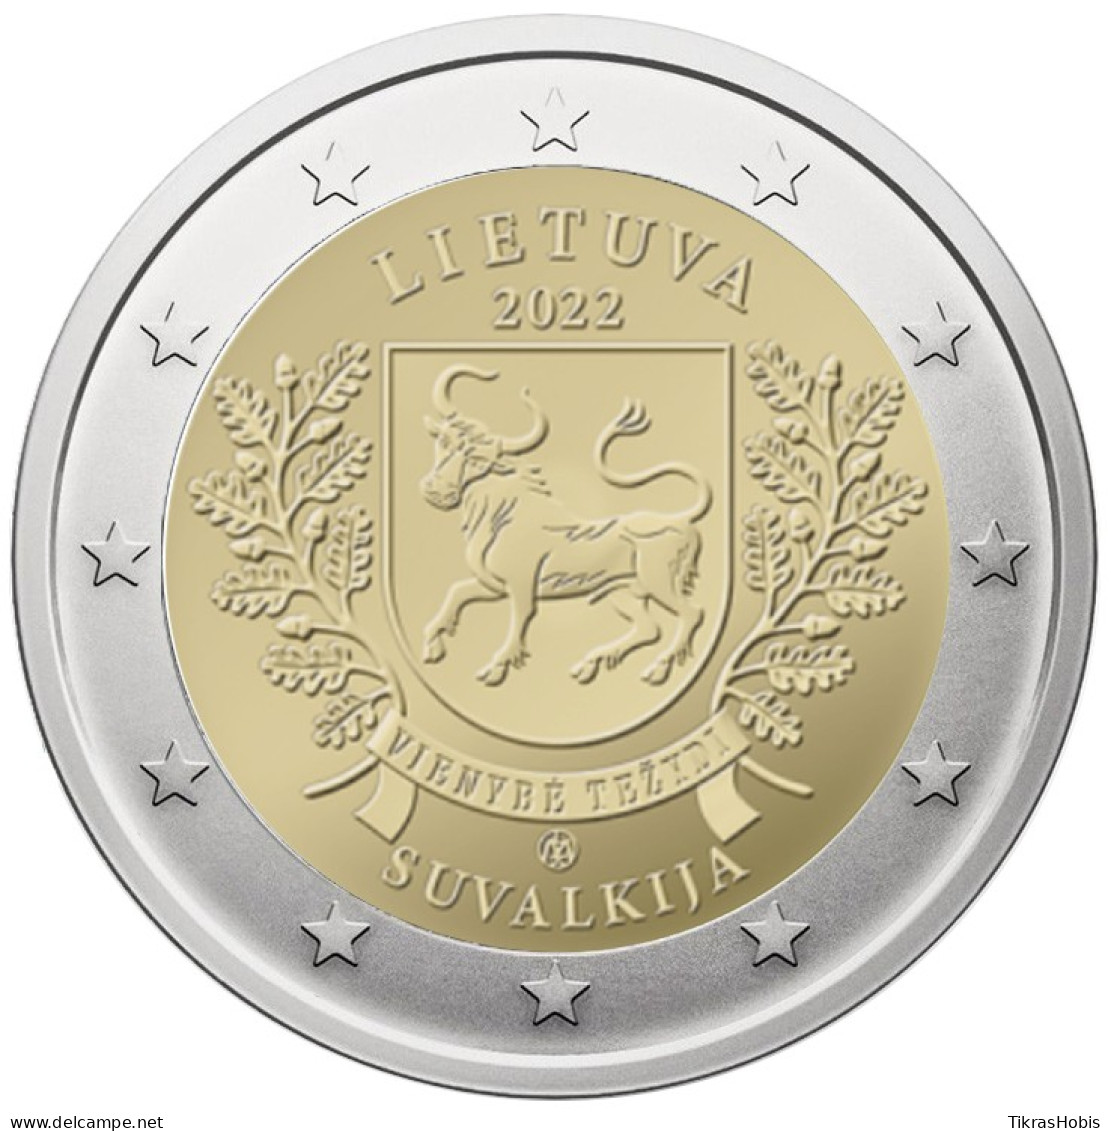 Lithuania 2 Euro, 2022 Suvalkija - Litauen